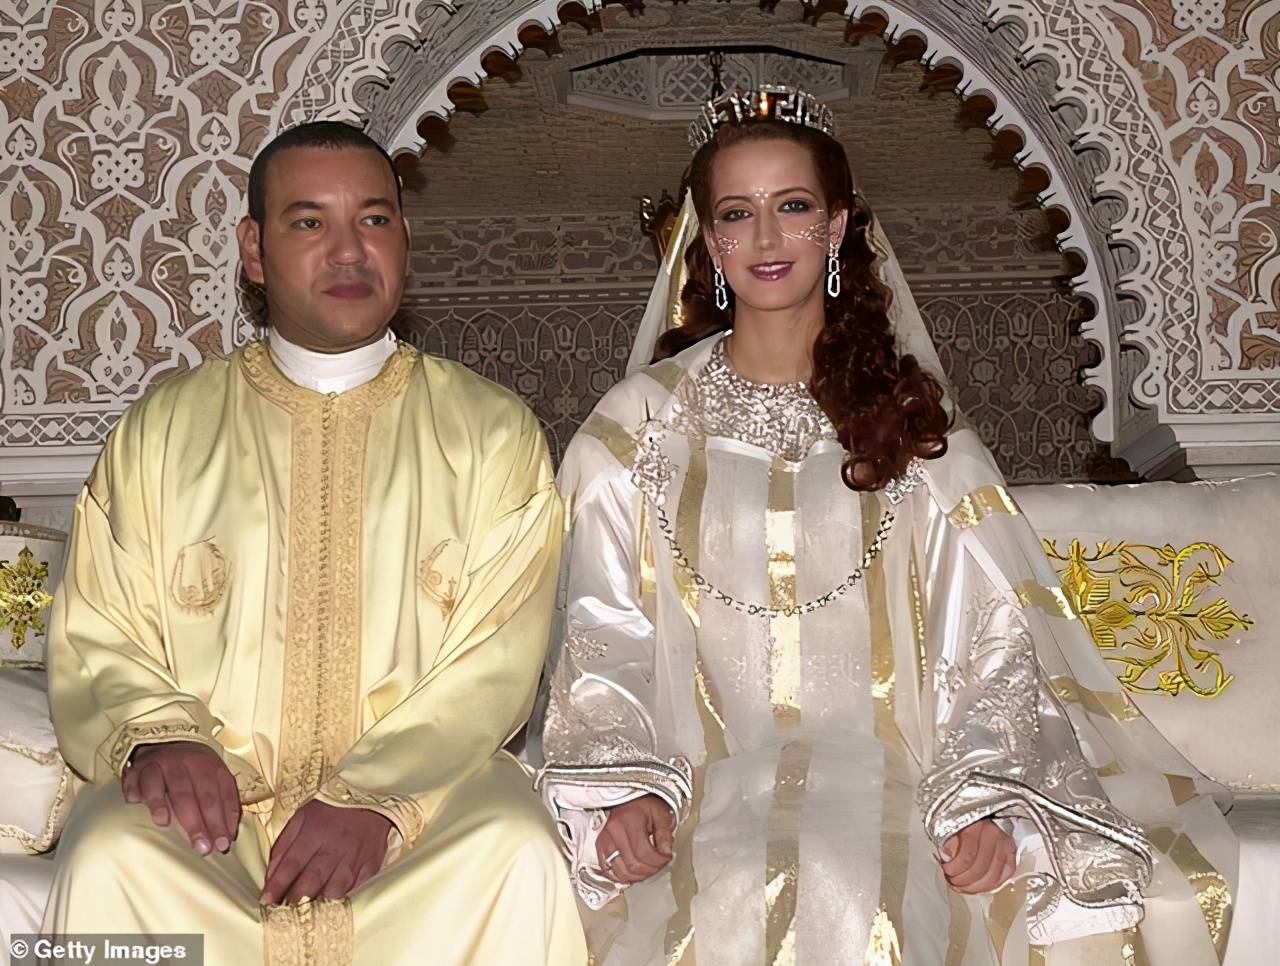 摩洛哥现任国王图片